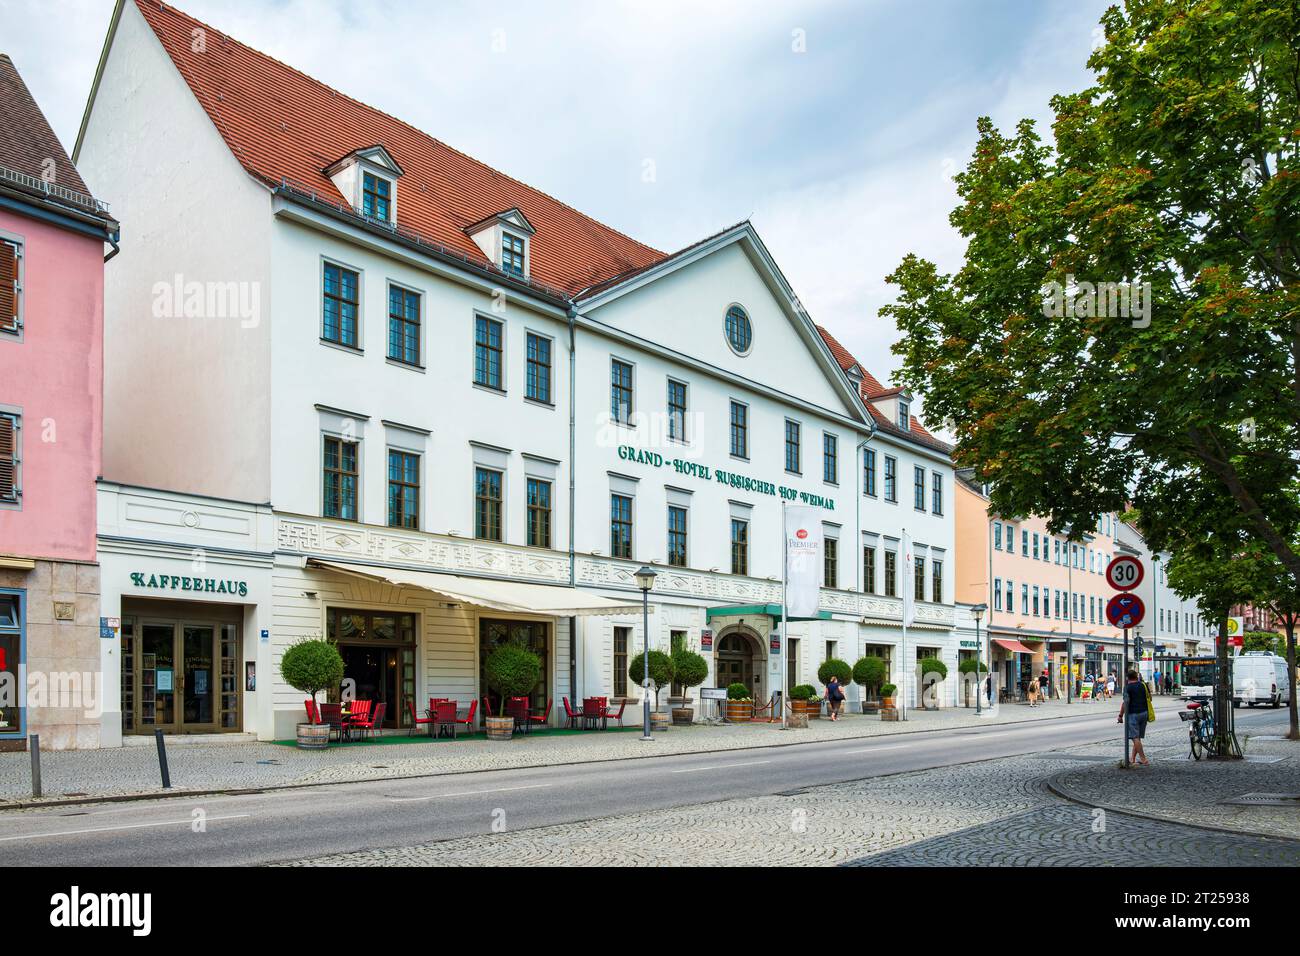 Scena quotidiana di fronte al Grand Hotel Russischer Hof Weimar nel centro di Weimar, Turingia, Germania, 13 agosto 2020. Foto Stock